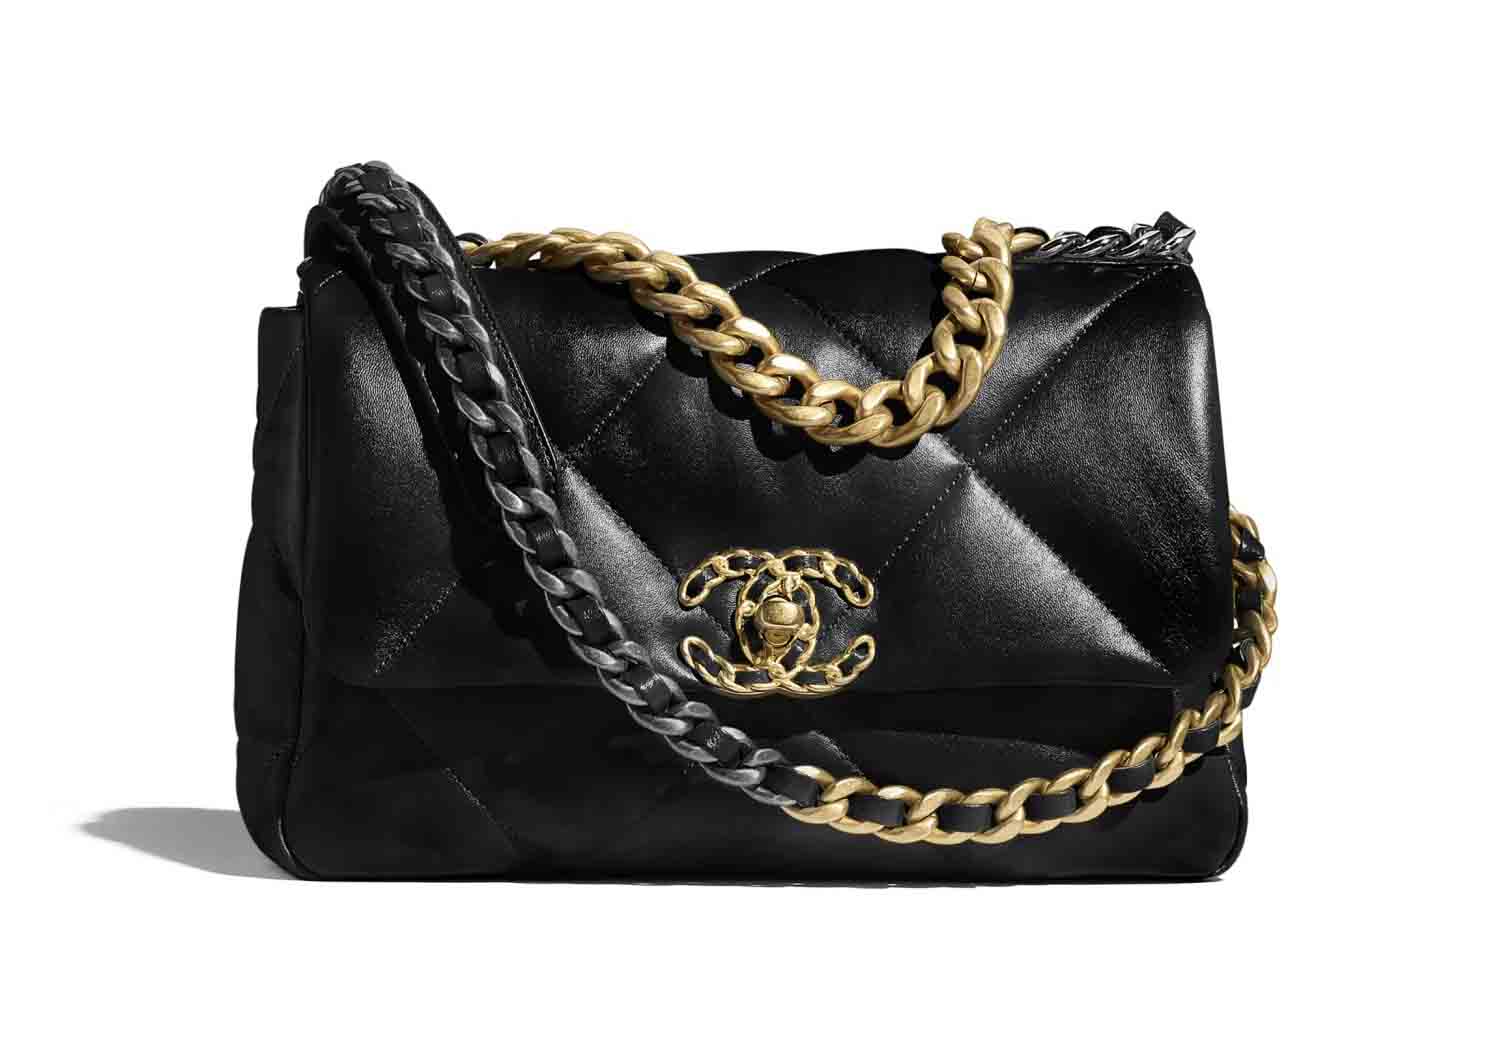 Chanel 19 Handbag Black Lambskin in Lambskin with  GoldSilverRutheniumtone  US